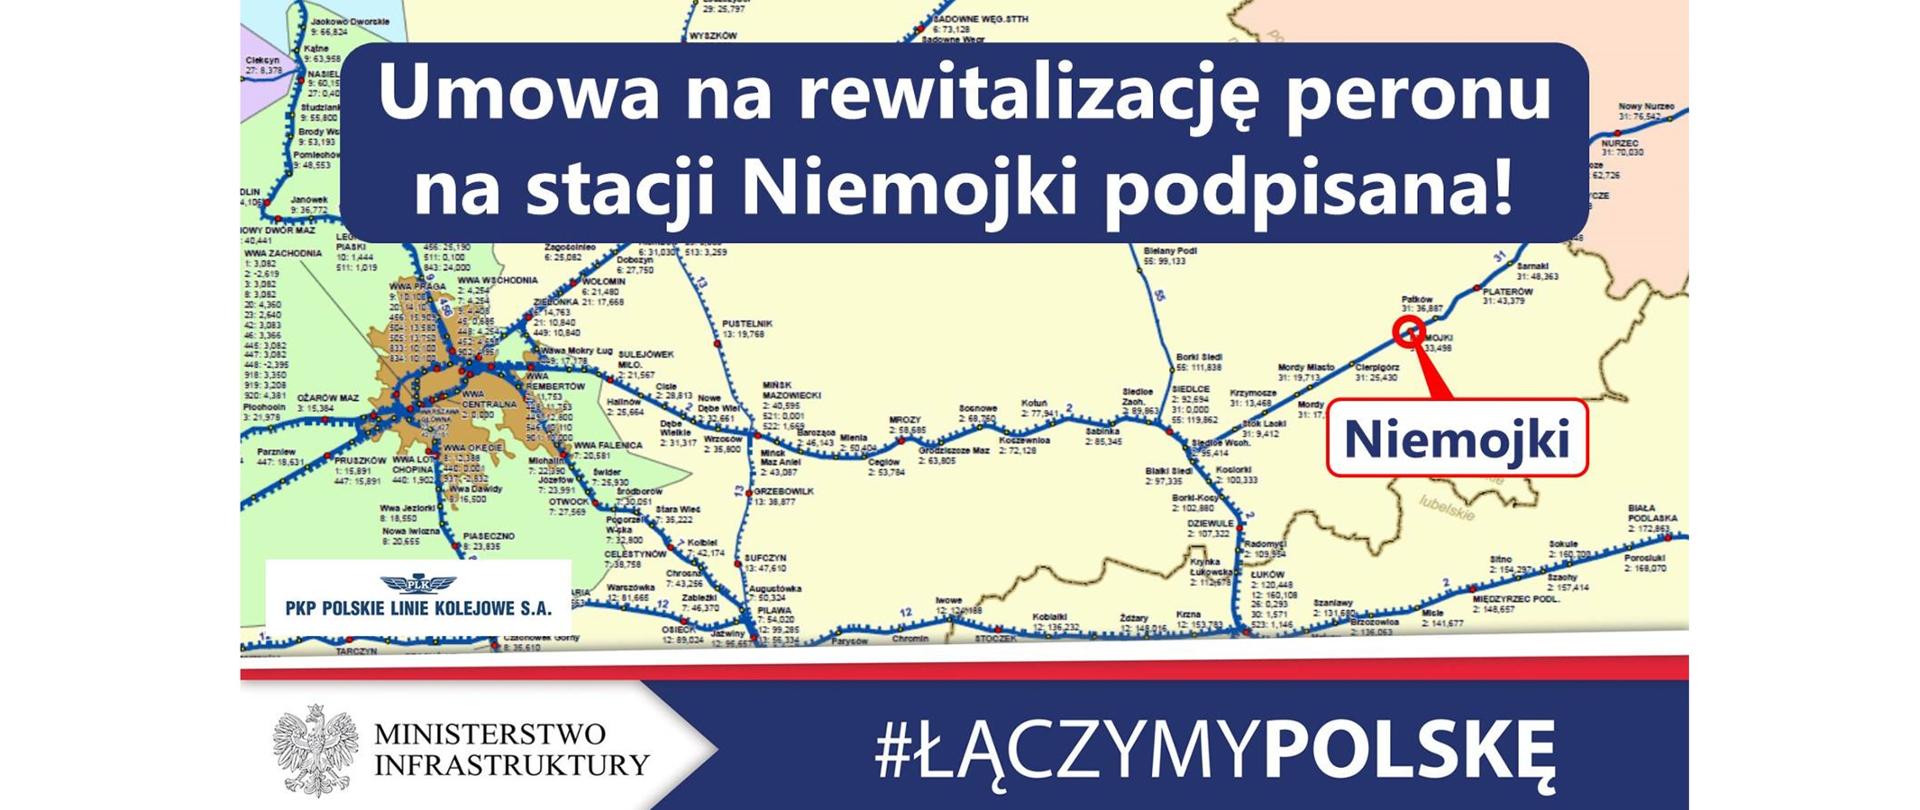 Umowa na rewitalizację peronu na stacji Niemojki podpisana - infografika